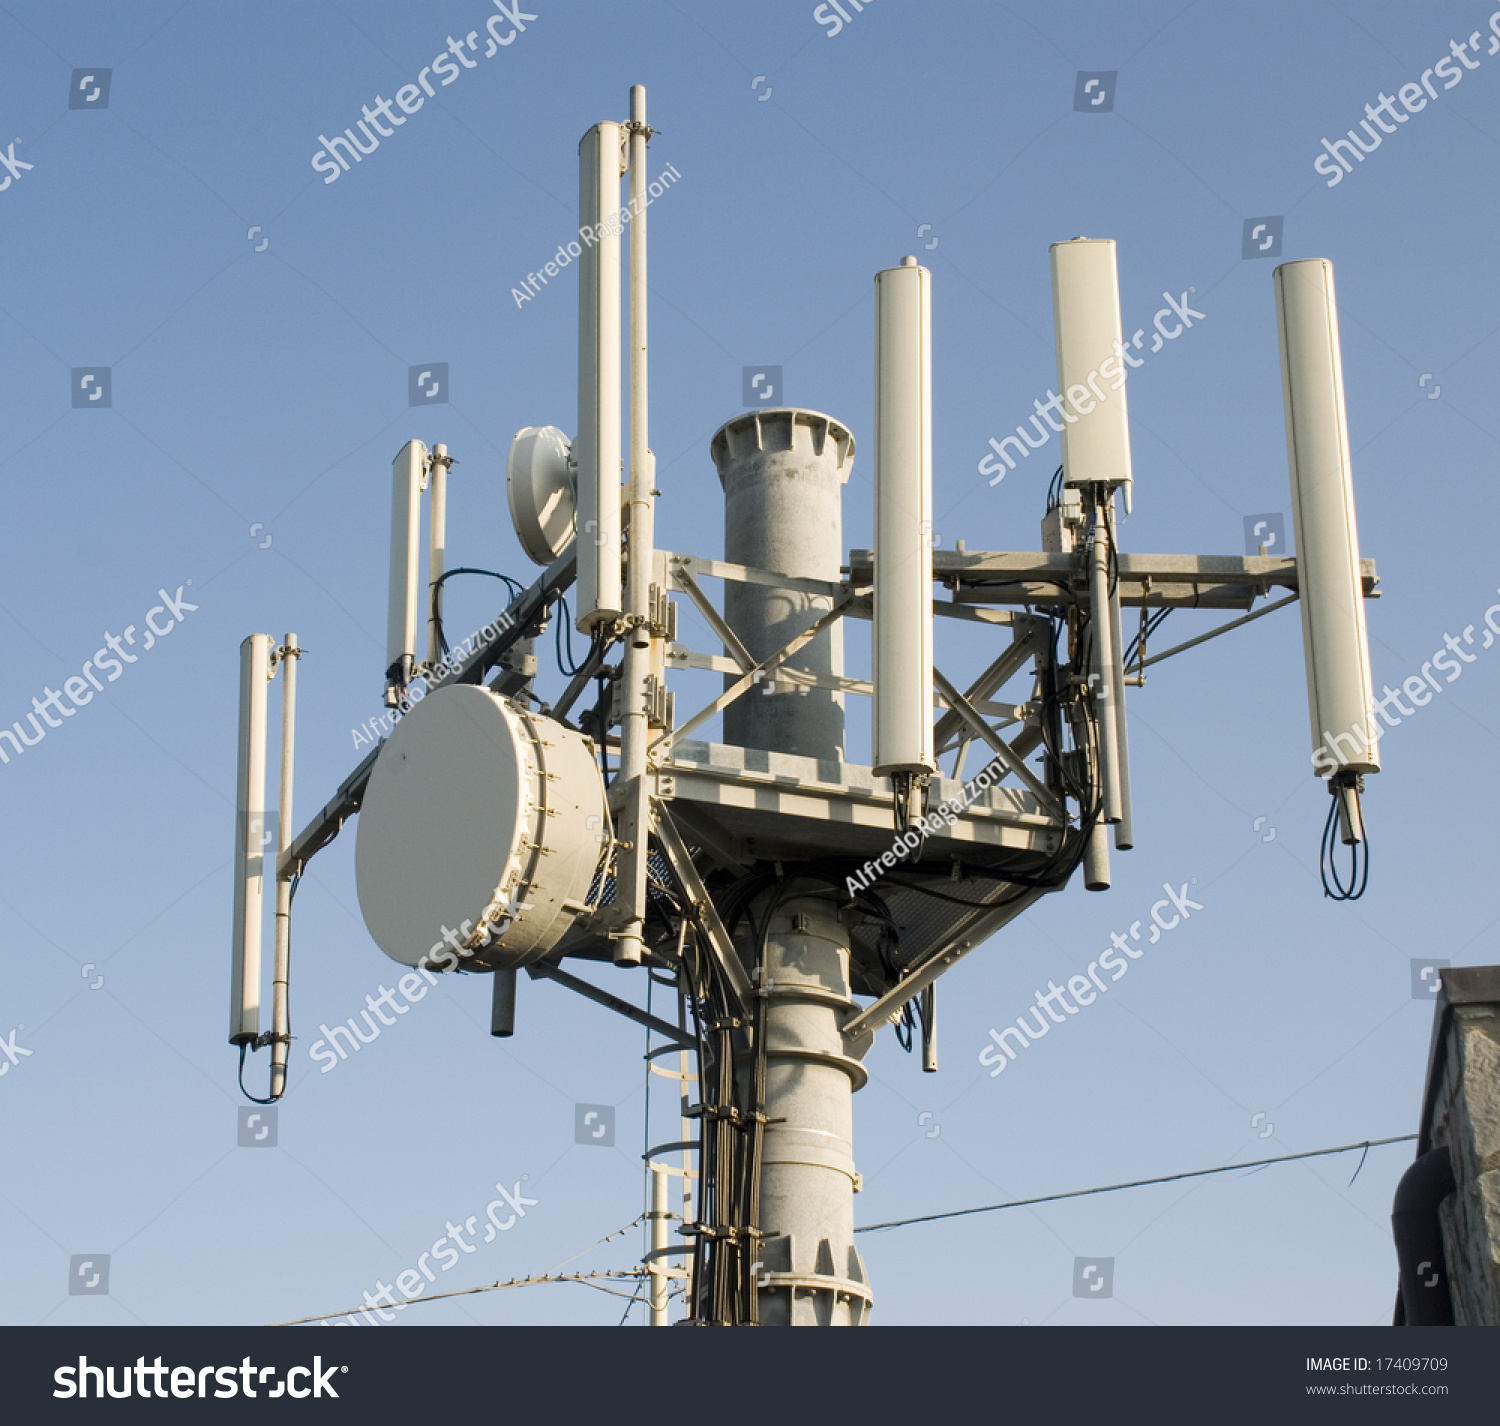 Telecommunications Antenna Stock Photo 17409709 - Shutterstock